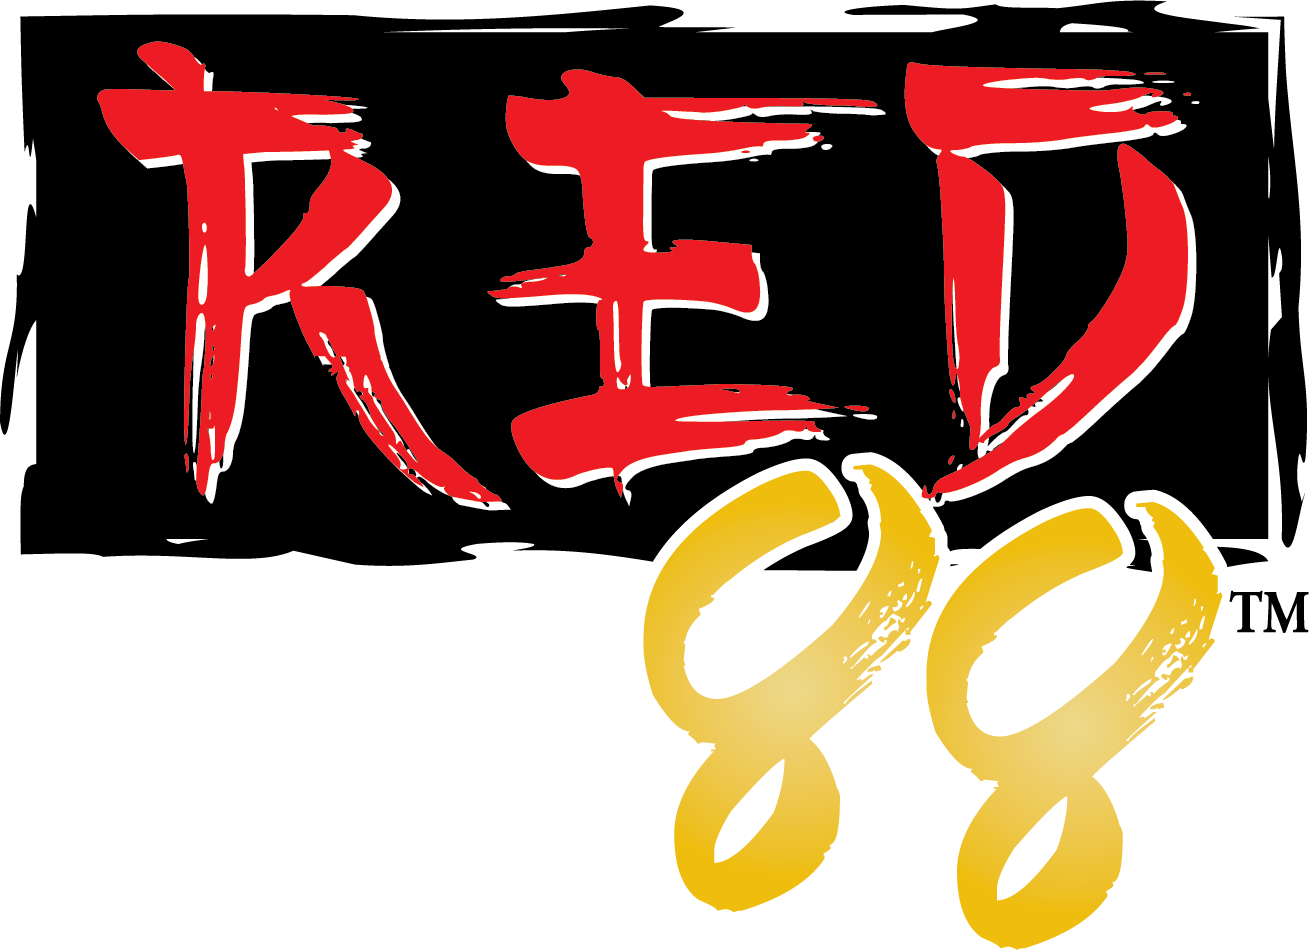 Red 88 logo